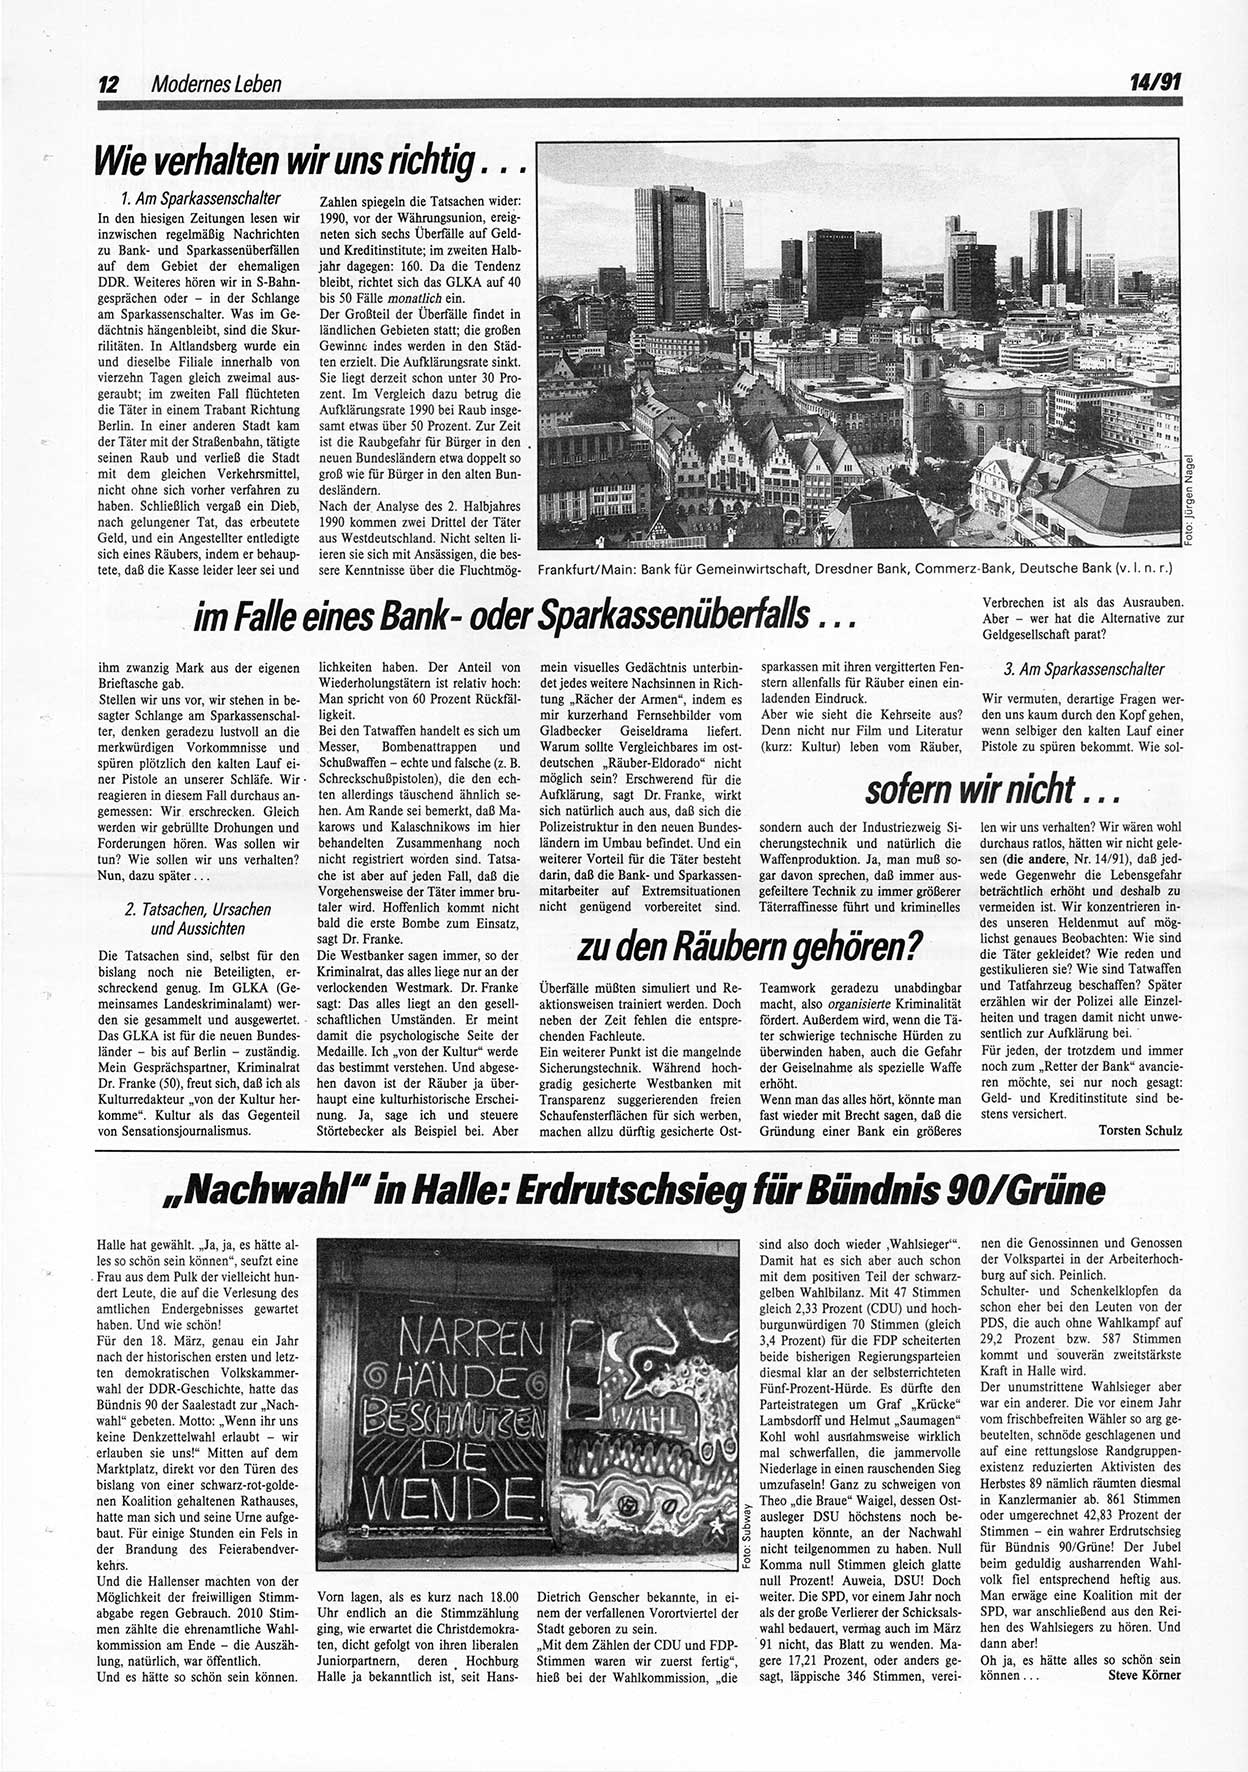 Die Andere, Unabhängige Wochenzeitung für Politik, Kultur und Kunst, Ausgabe 14 vom 3.4.1991, Seite 12 (And. W.-Zg. Ausg. 14 1991, S. 12)